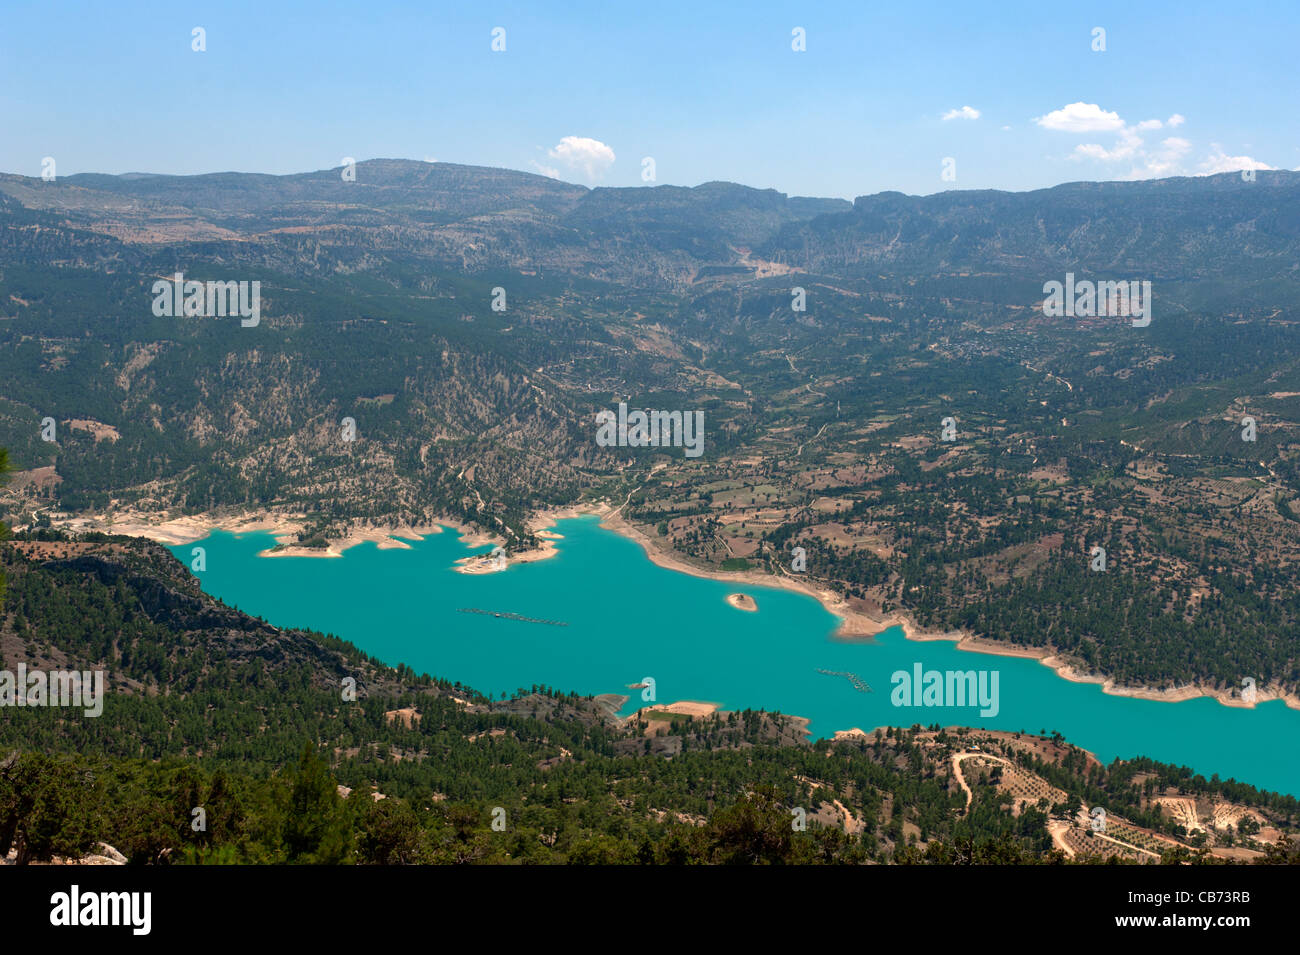 Vue panoramique sur le lac du barrage d'Ermenek Rivière Göksu Turquie Banque D'Images